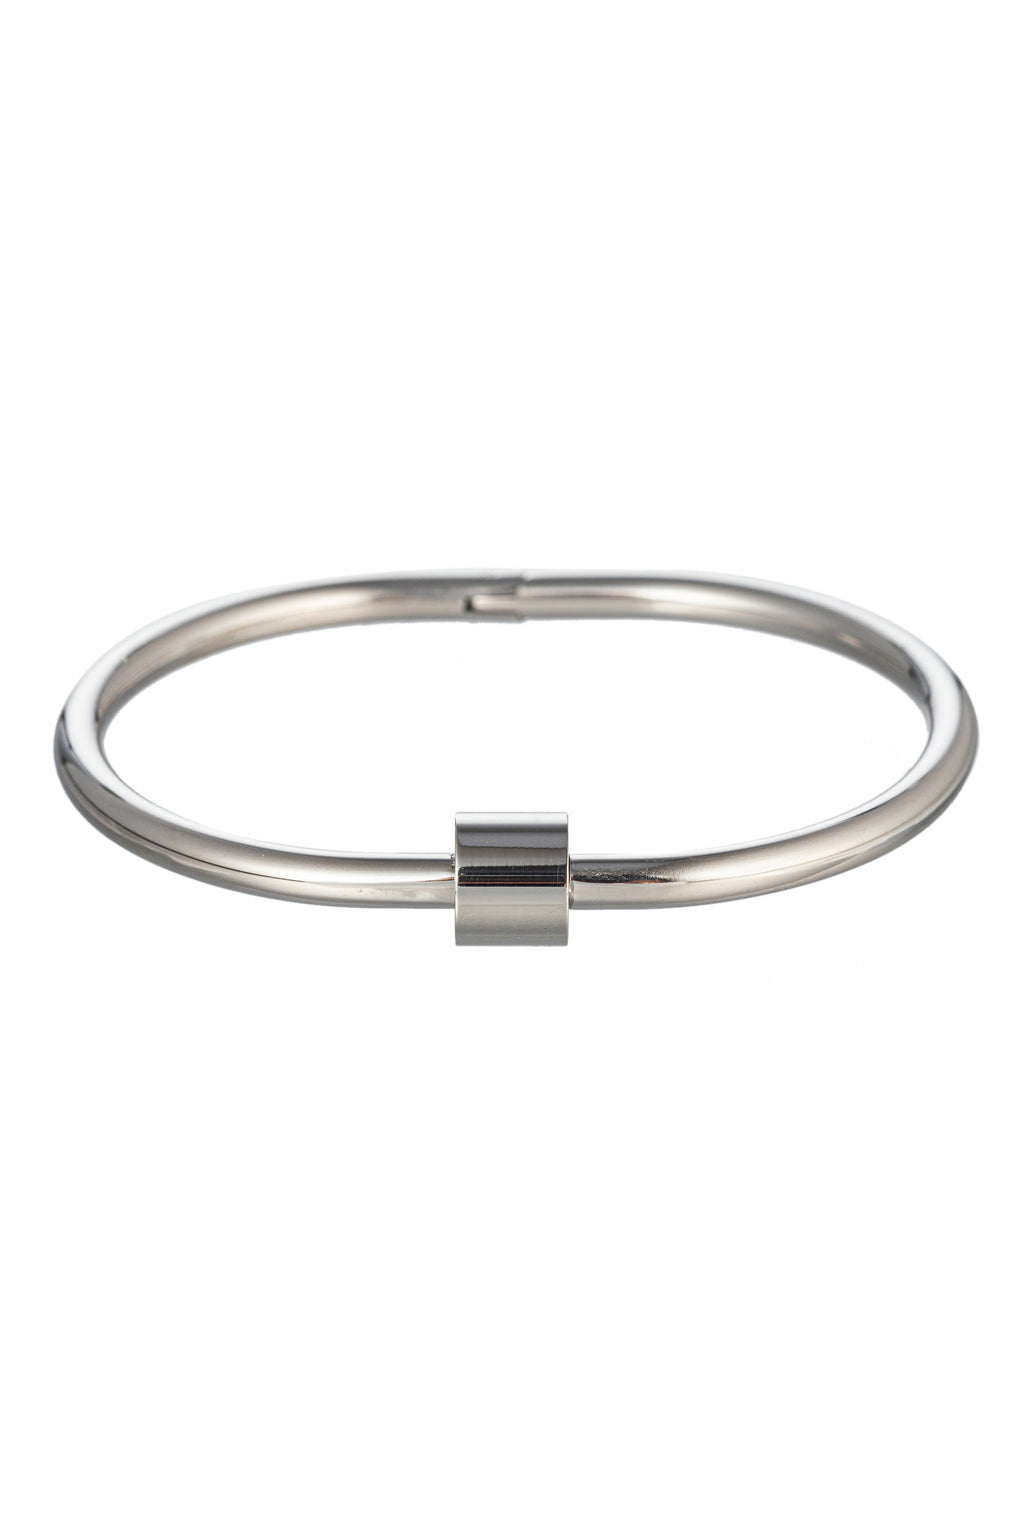 Silver tone titanium screw cuff bracelet.